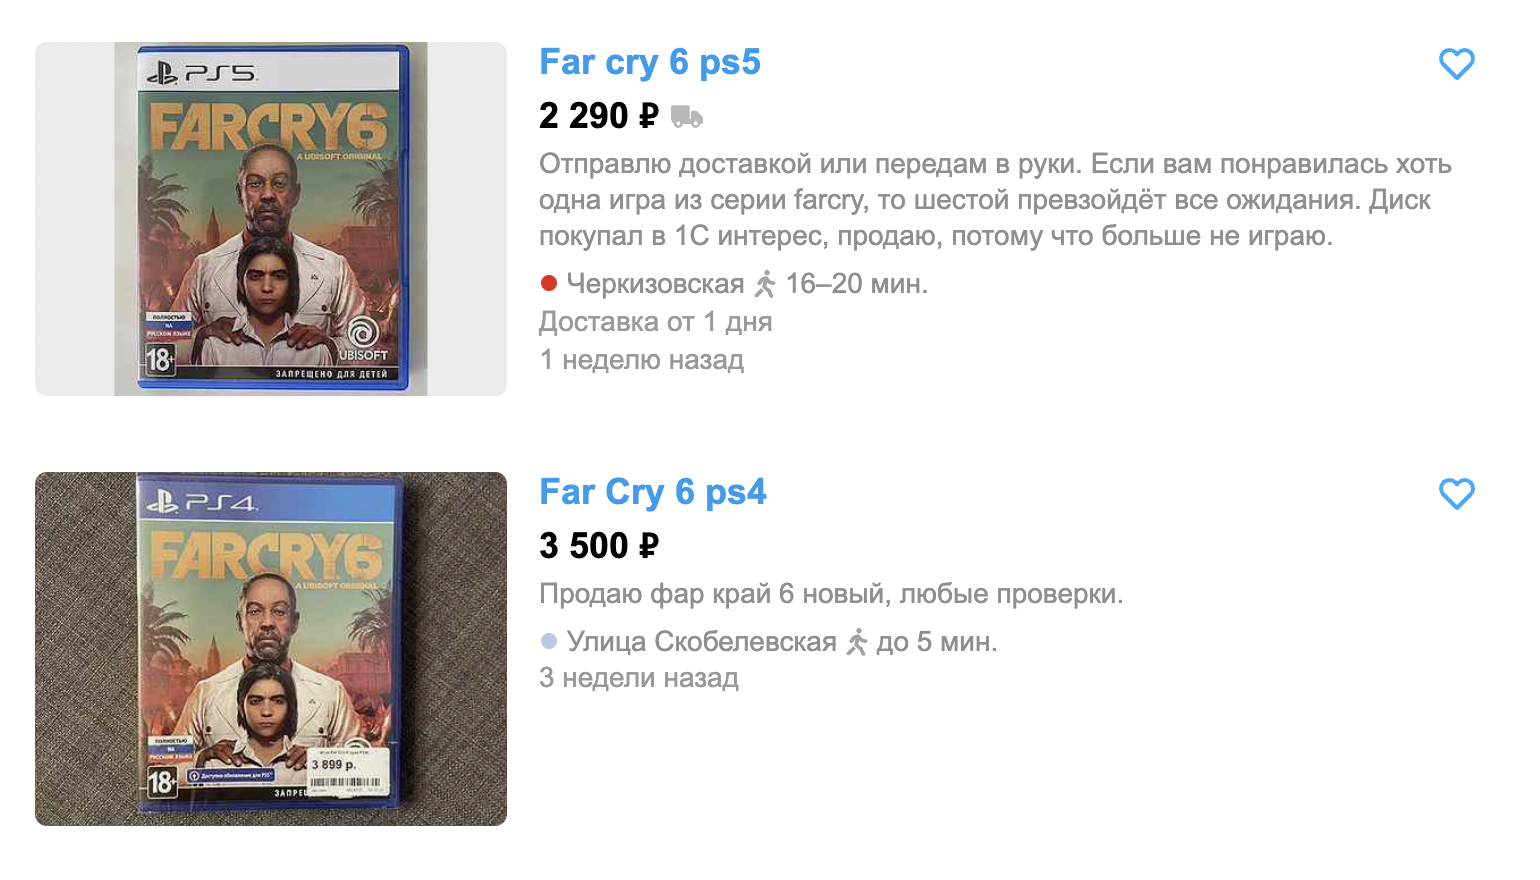 Никогда не угадаешь, какие цены поставят продавцы. Far Cry 6 для PS5 может оказаться дешевле версии для PS4, хотя должно быть наоборот. Источник: avito.ru